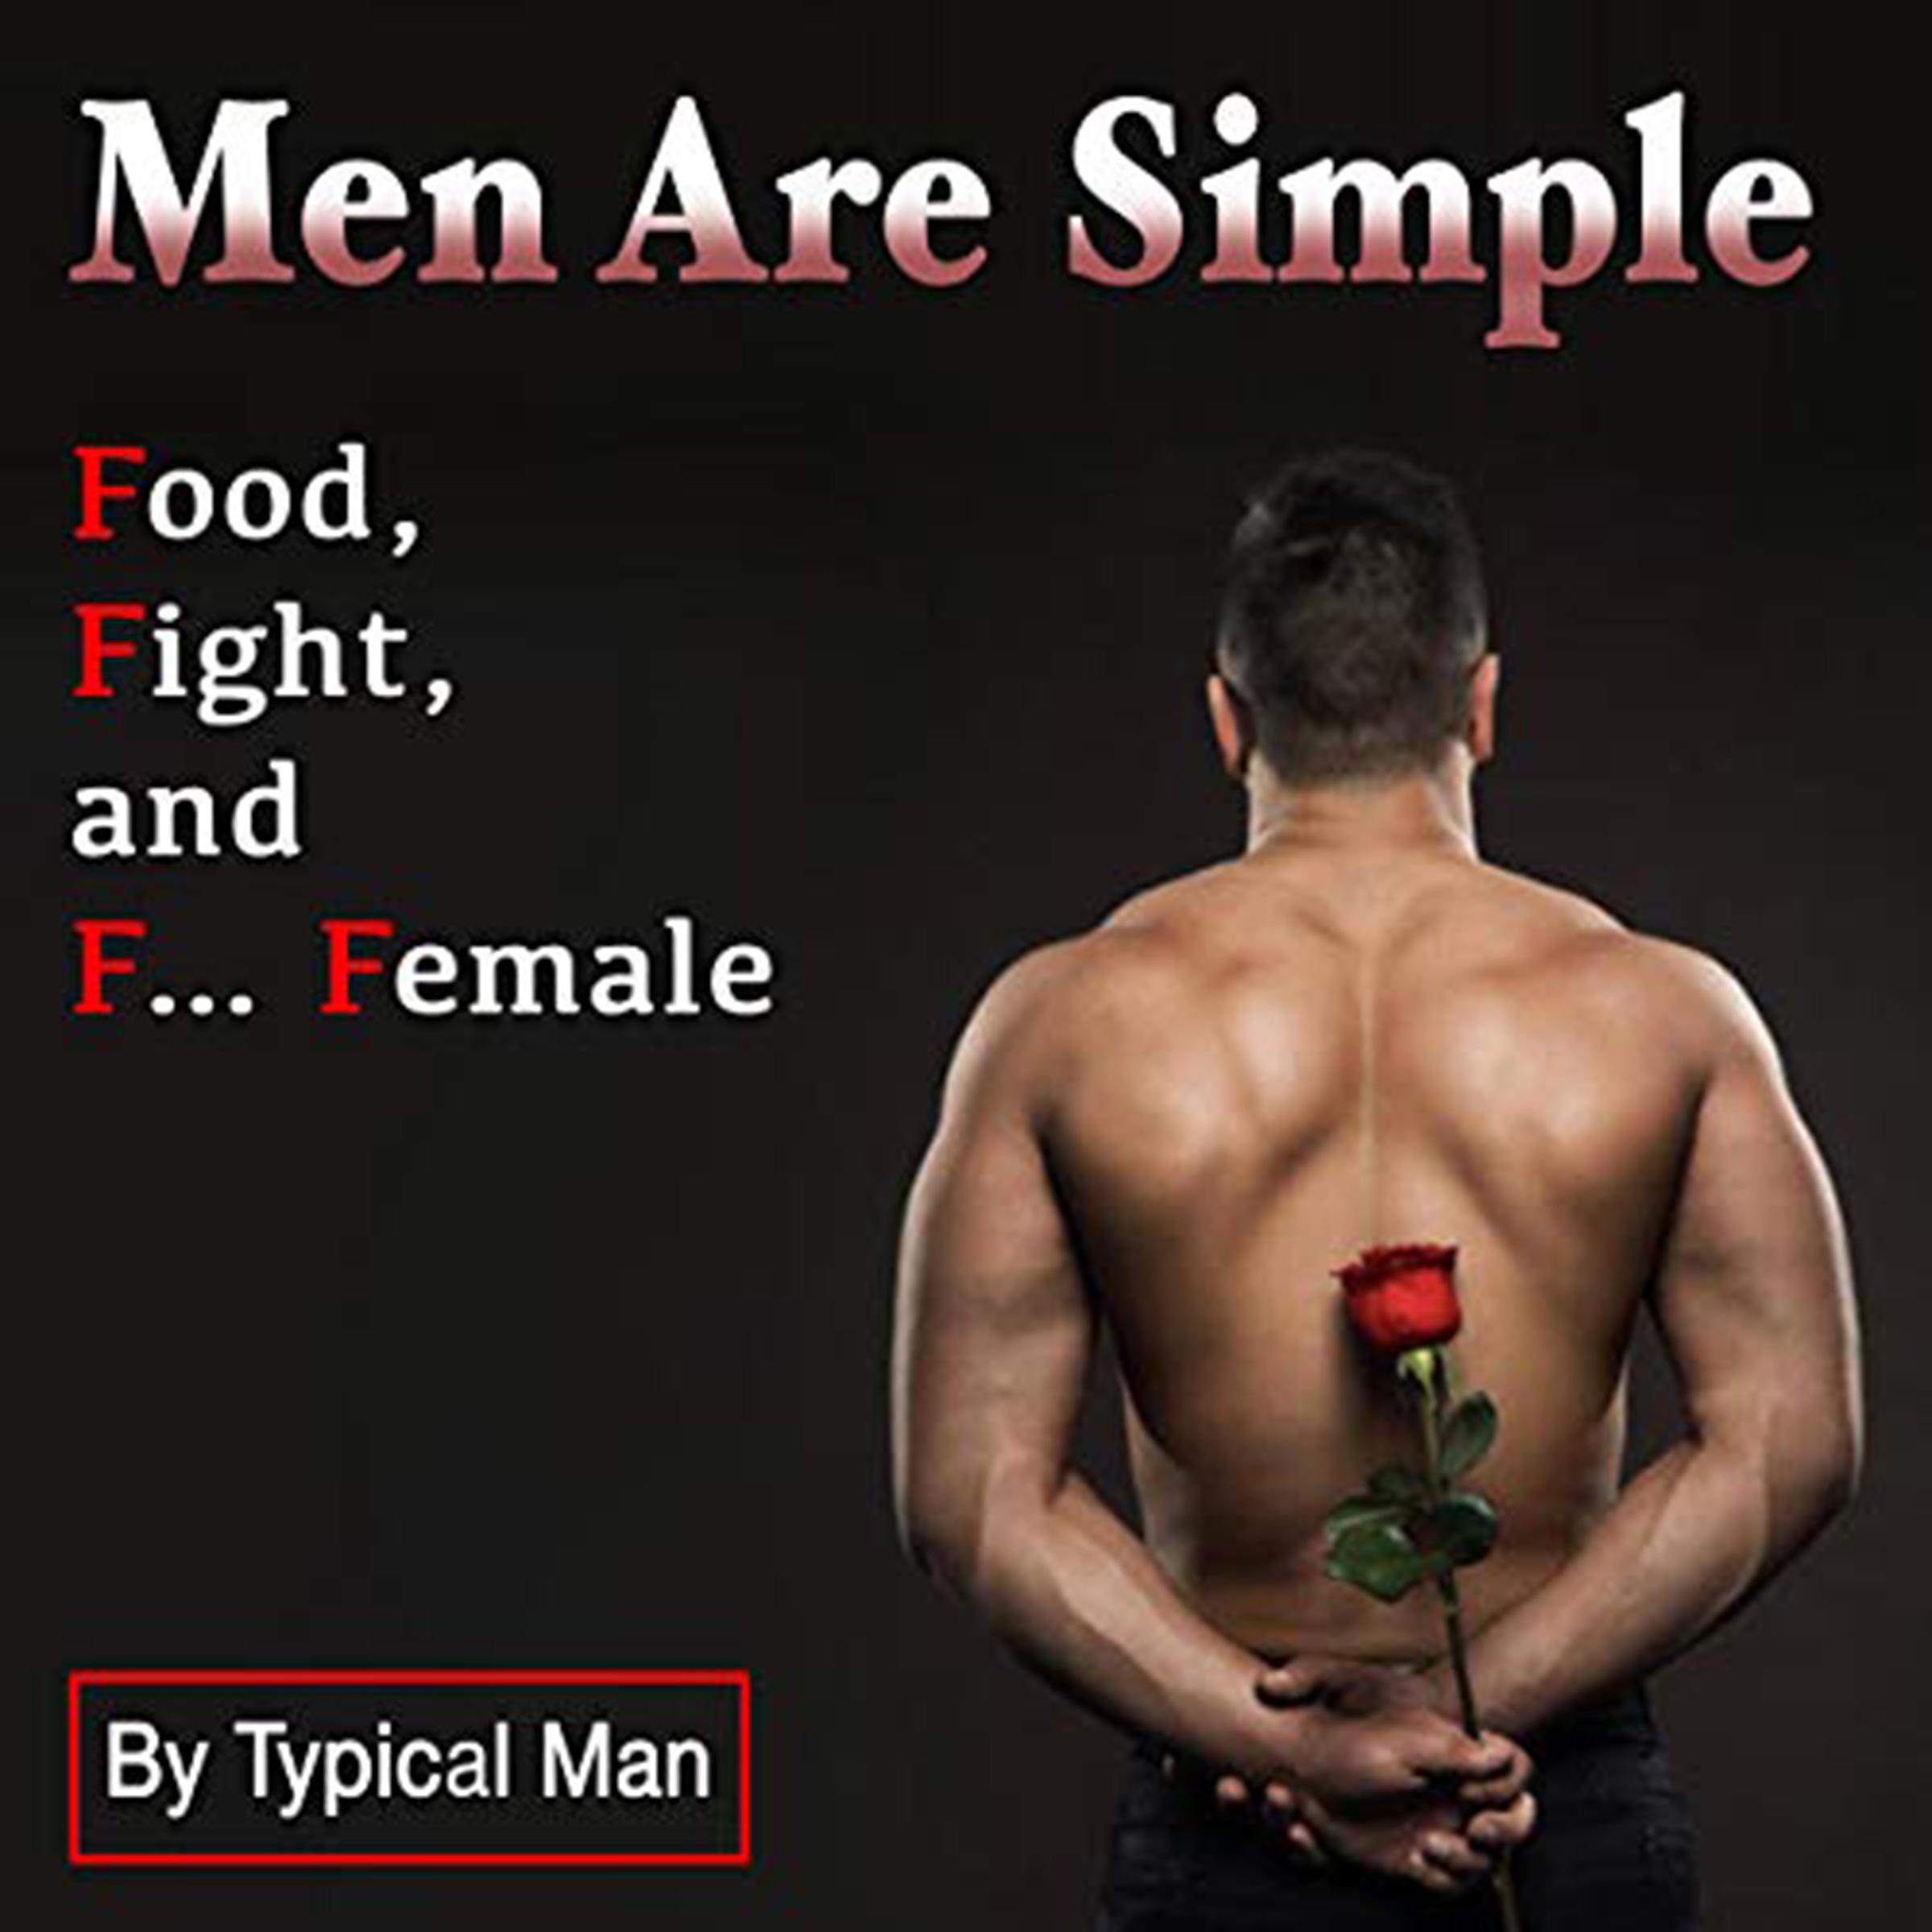 Men Are Simple